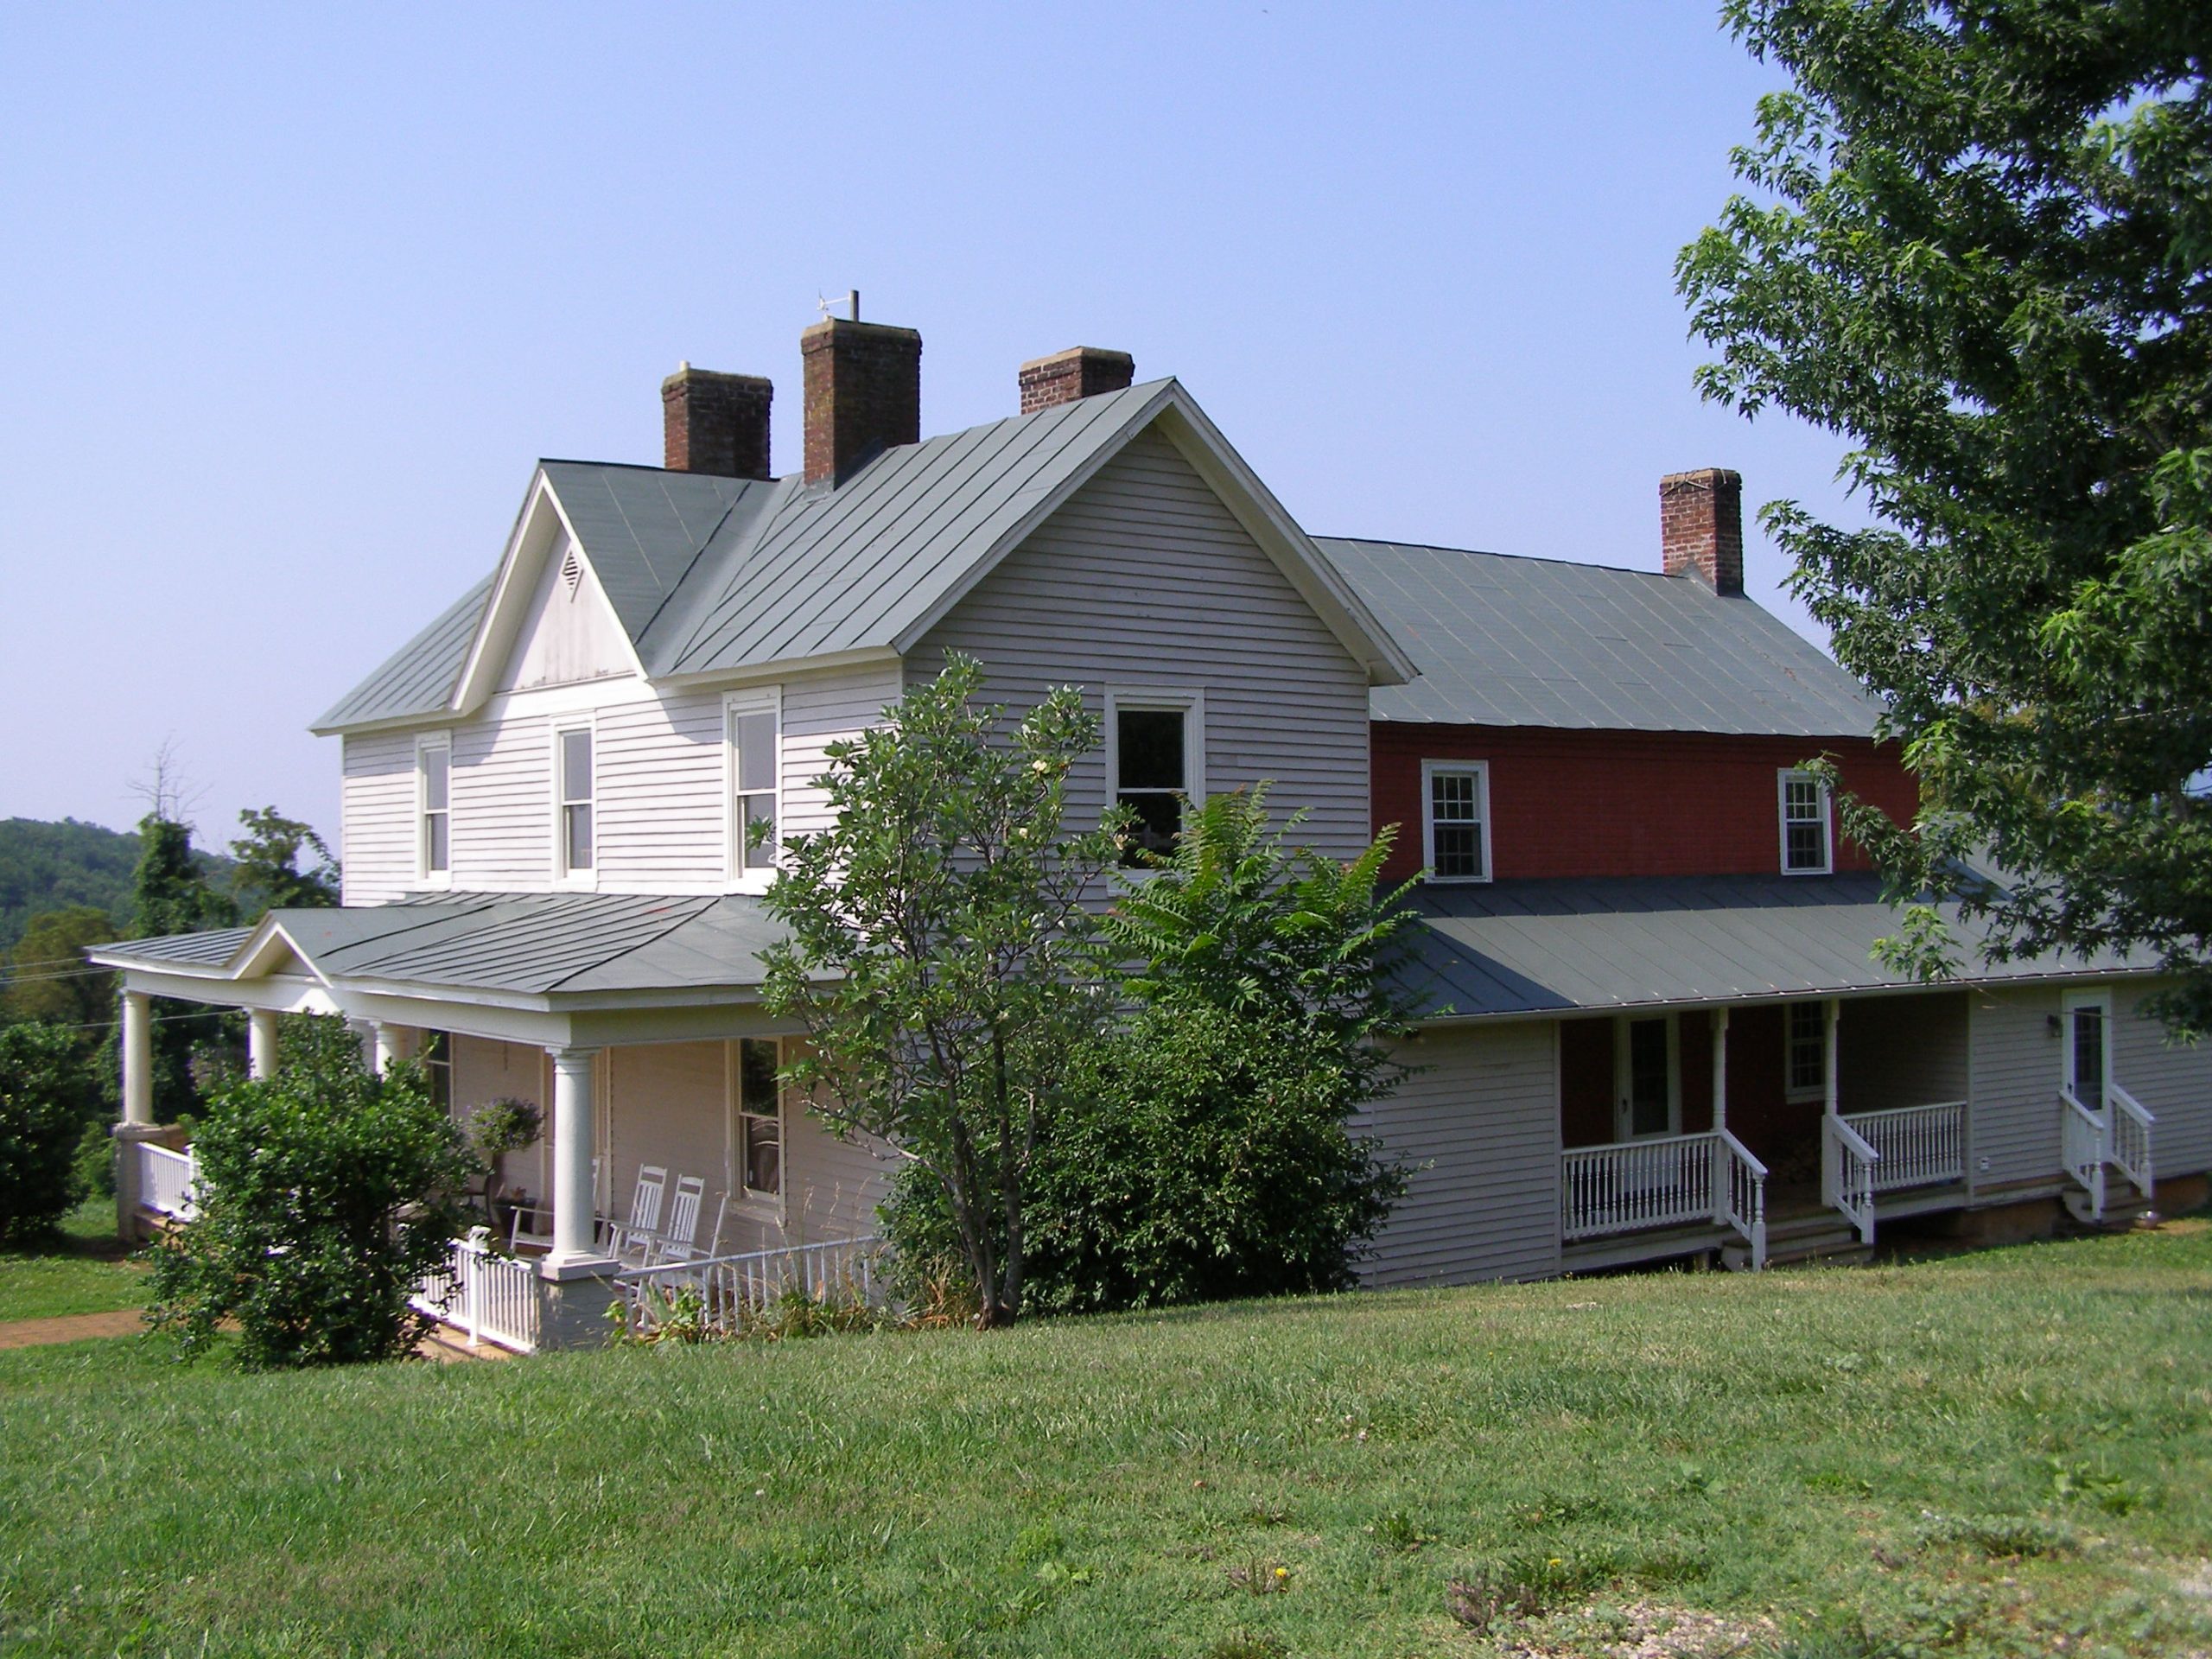 Bowman Farm Historic Home